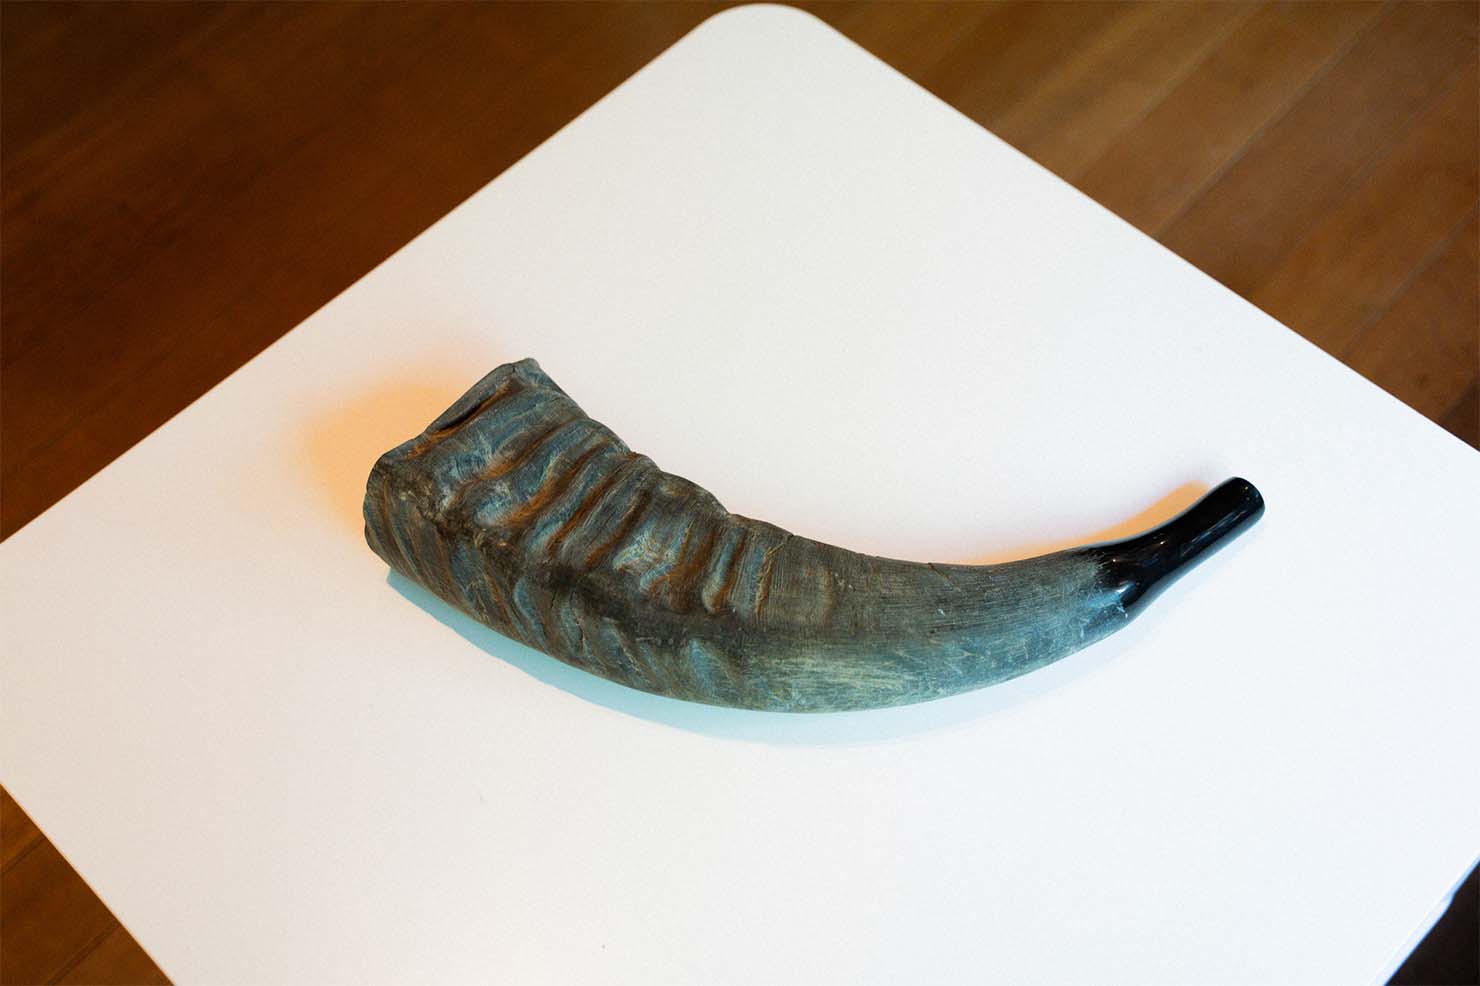 角笛は、金管楽器であるホルンの先祖。 象や牛、バッファローなどの角から作られていたが、中世ヨーロッパの騎士たちの間では特に象牙製の角笛が愛好されていたという。 中世では、晩酌の盃としても使われていたという記述も残っている。 （出典：ヤマハ）